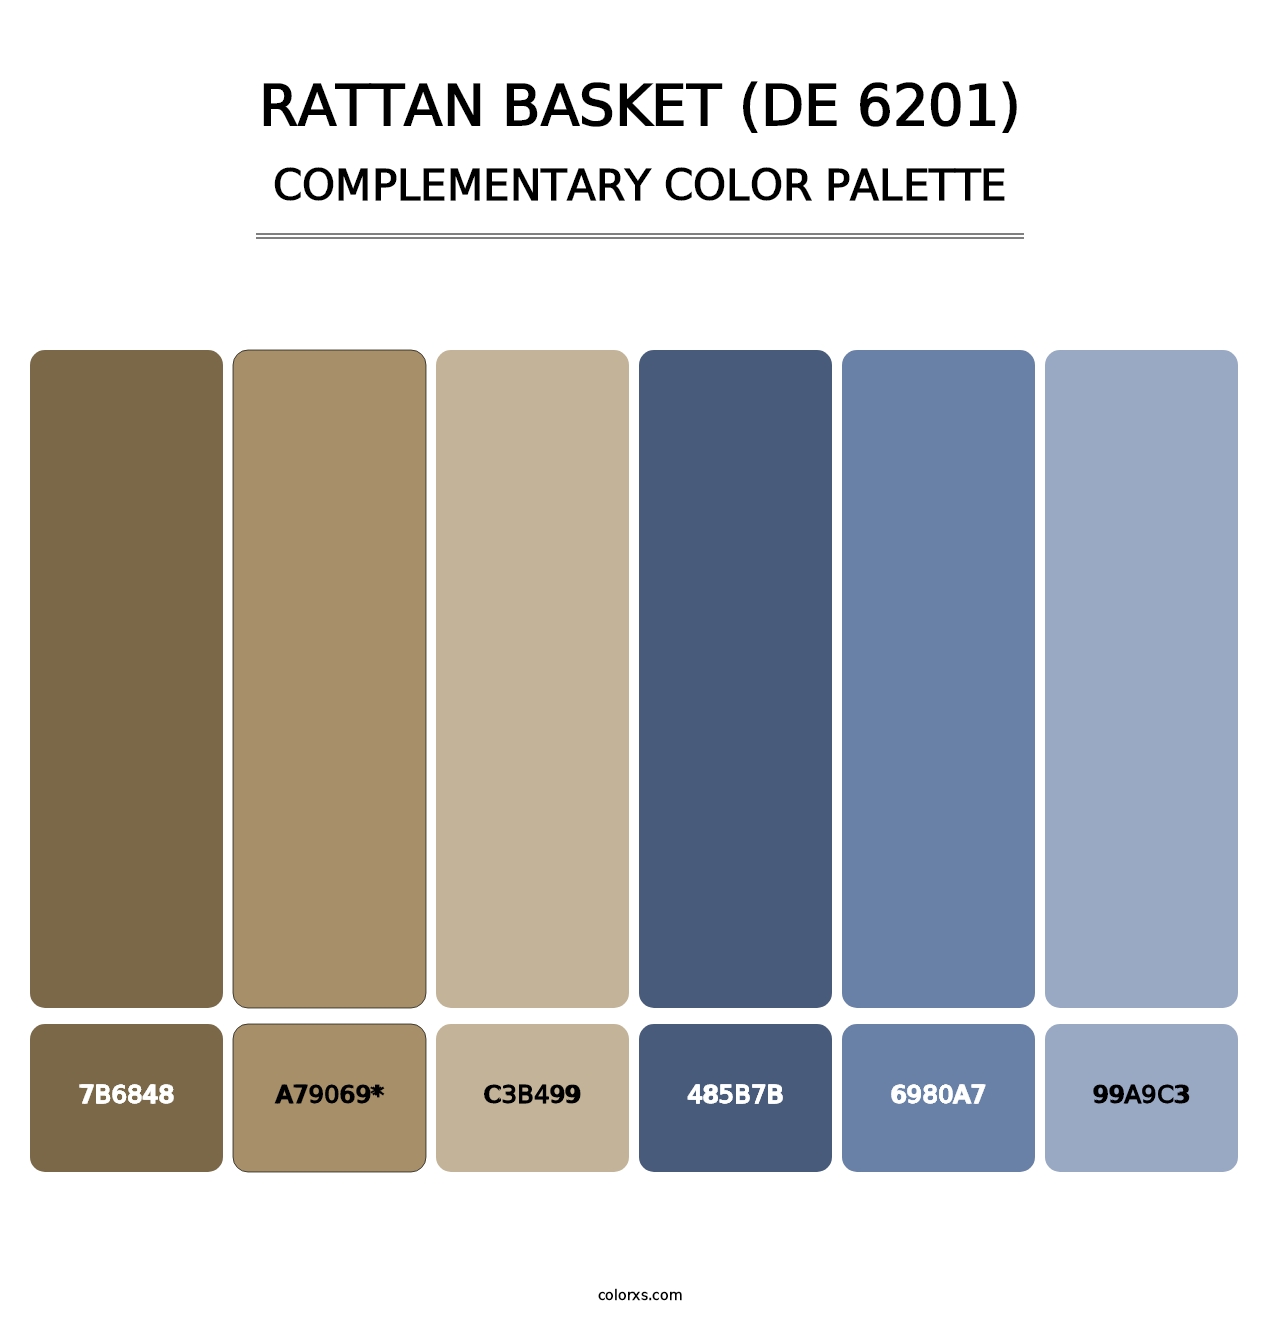 Rattan Basket (DE 6201) - Complementary Color Palette